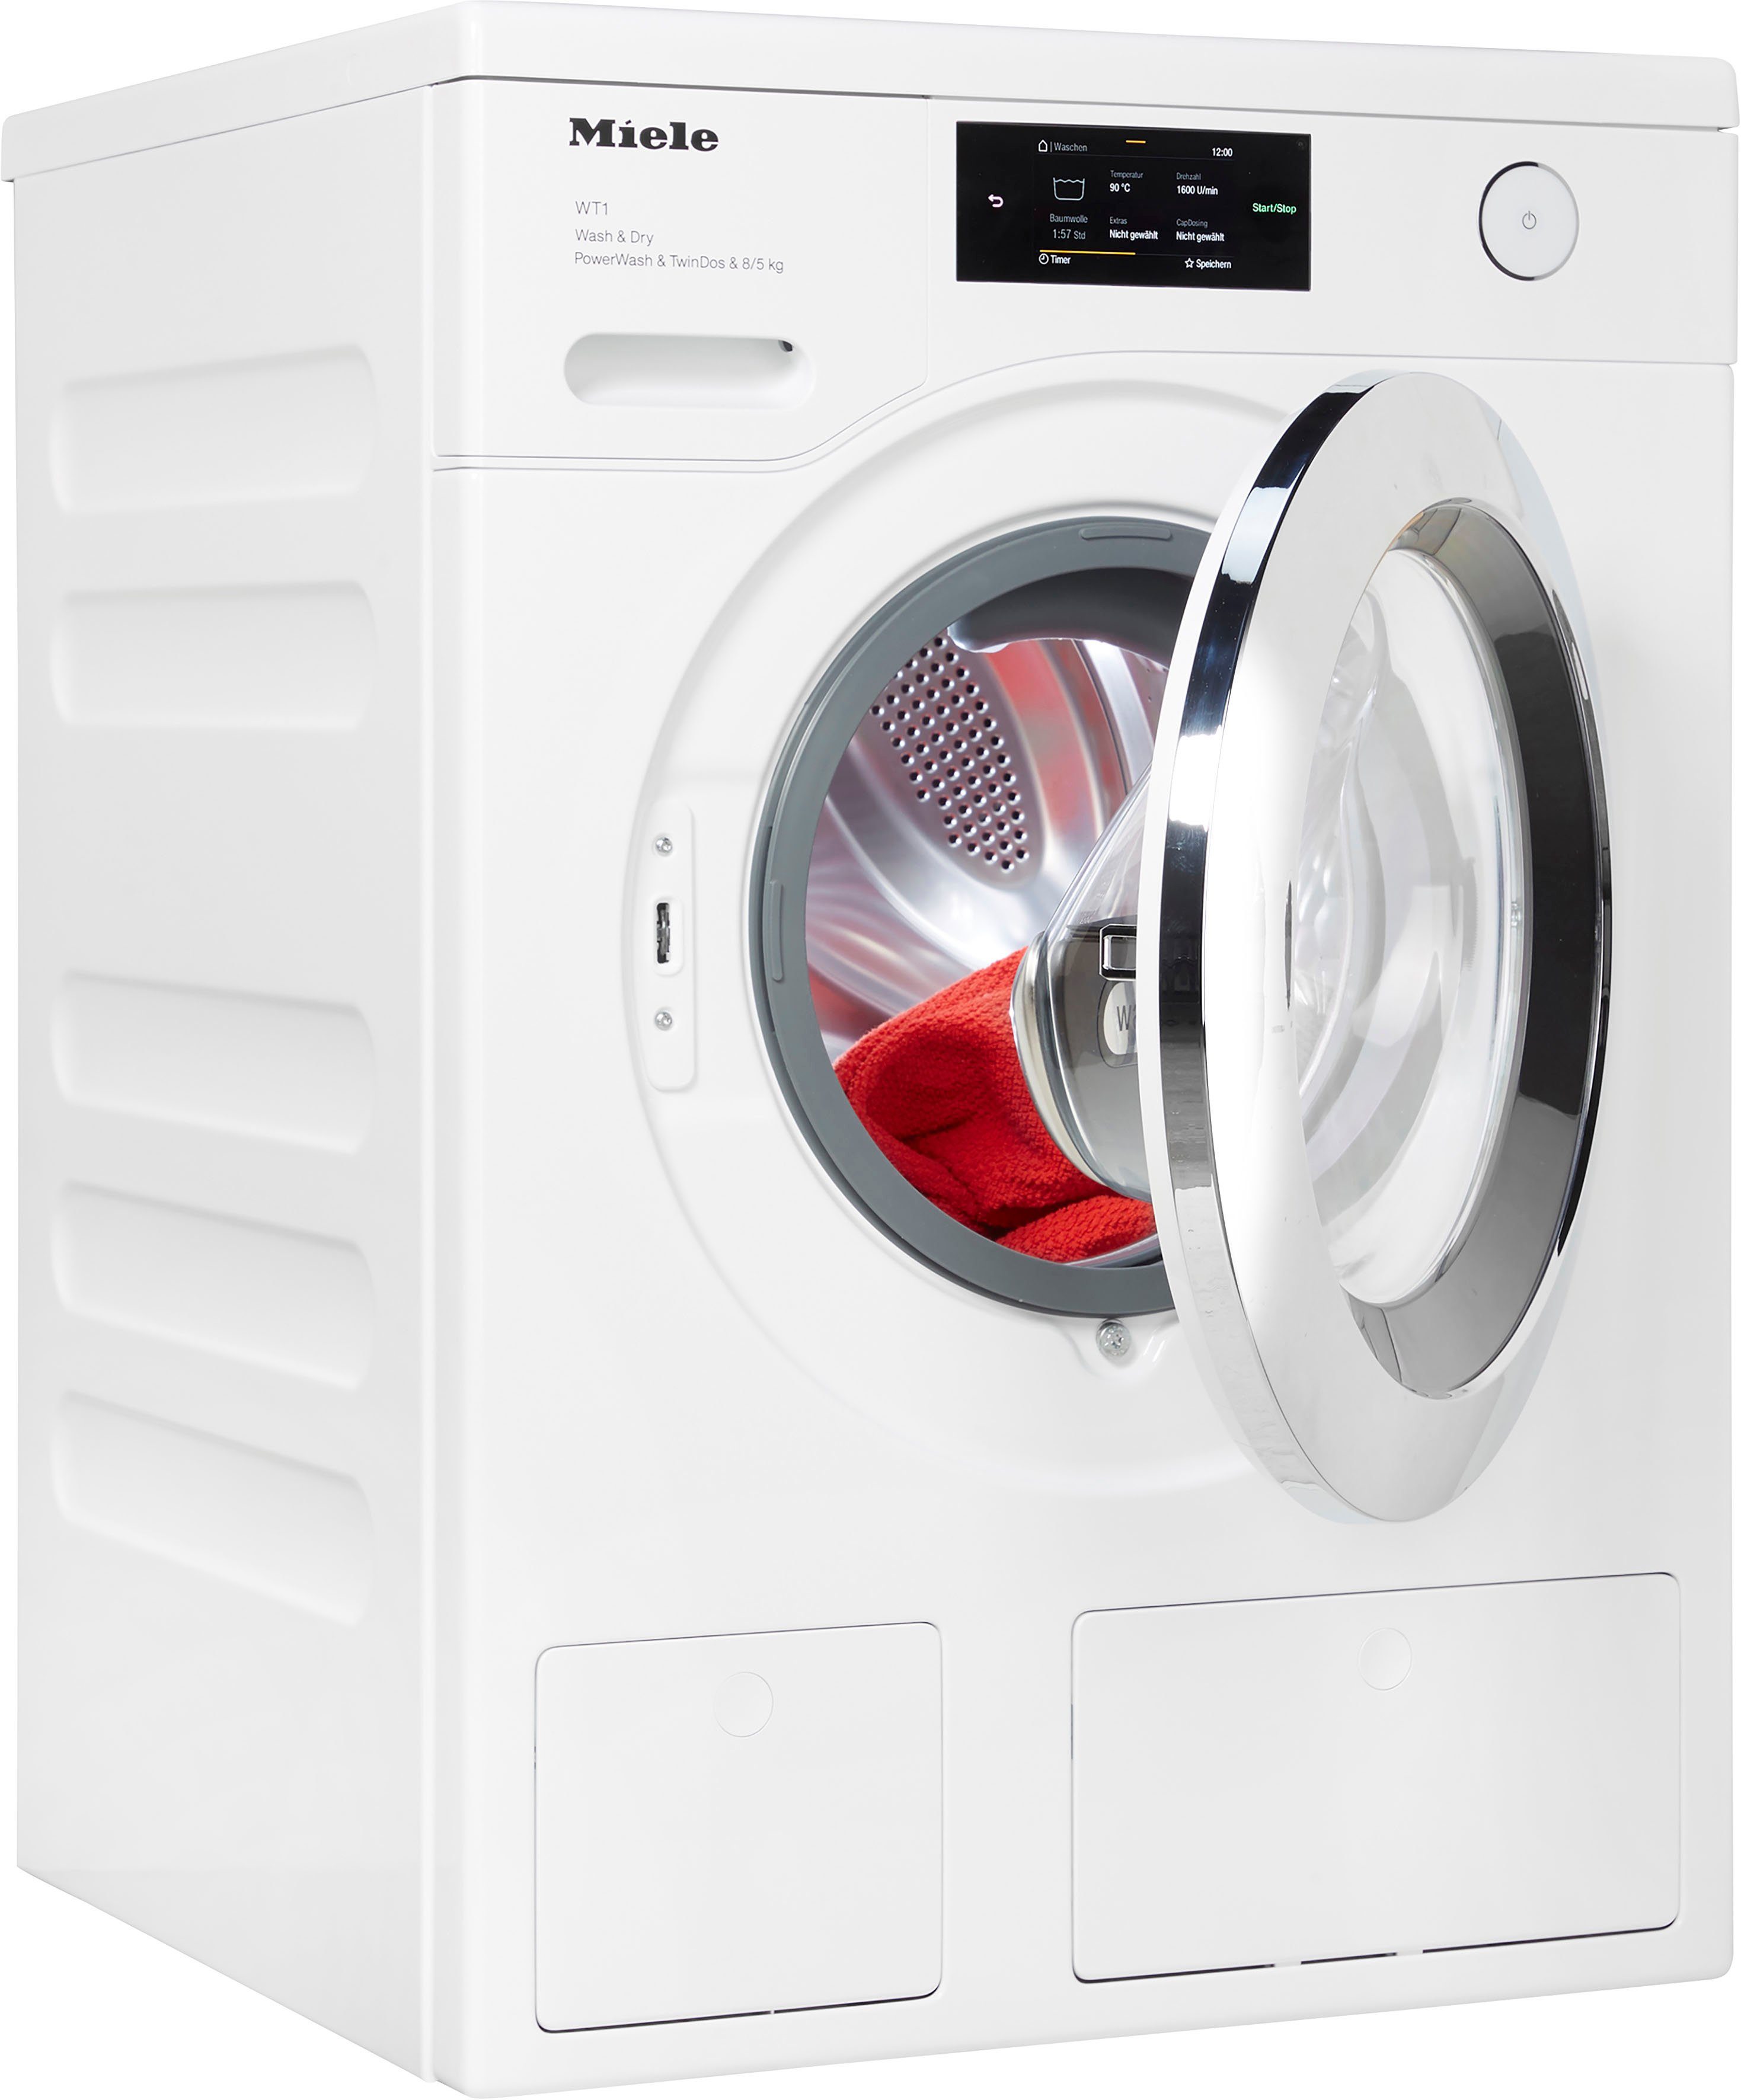 8 Trocknen Waschen LW kg, Kg, Miele U/min, PWash&TDos QuickPower schnelles 5 8/5 Waschtrockner für 1600 D und unterbaufähig, kg, WTR860WPM